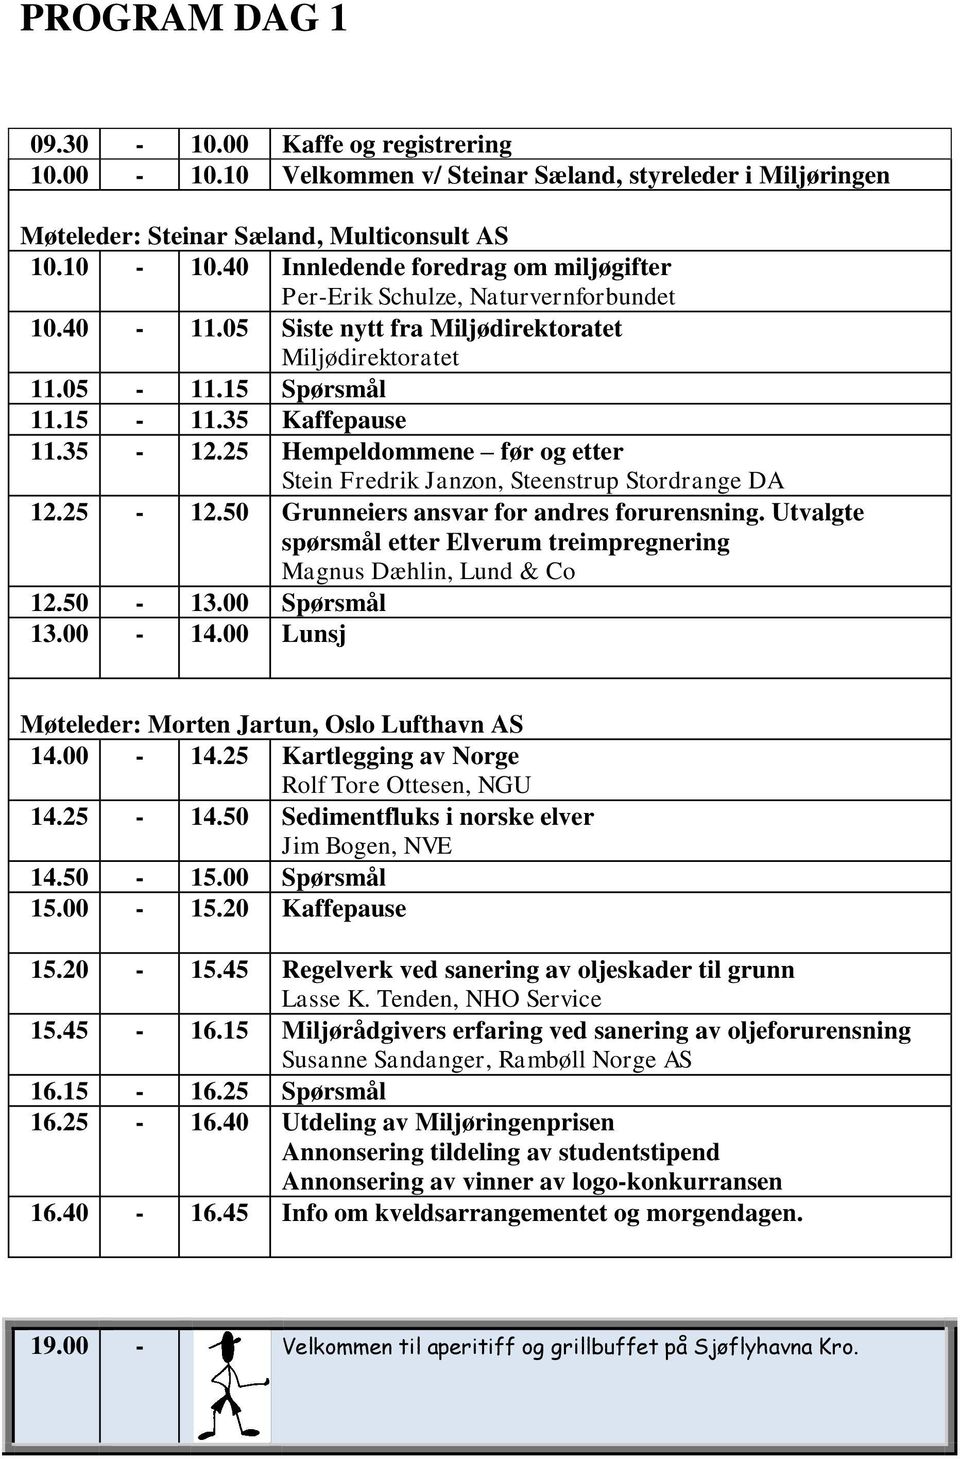 25 Hempeldommene før og etter Stein Fredrik Janzon, Steenstrup Stordrange DA 12.25-12.50 Grunneiers ansvar for andres forurensning.